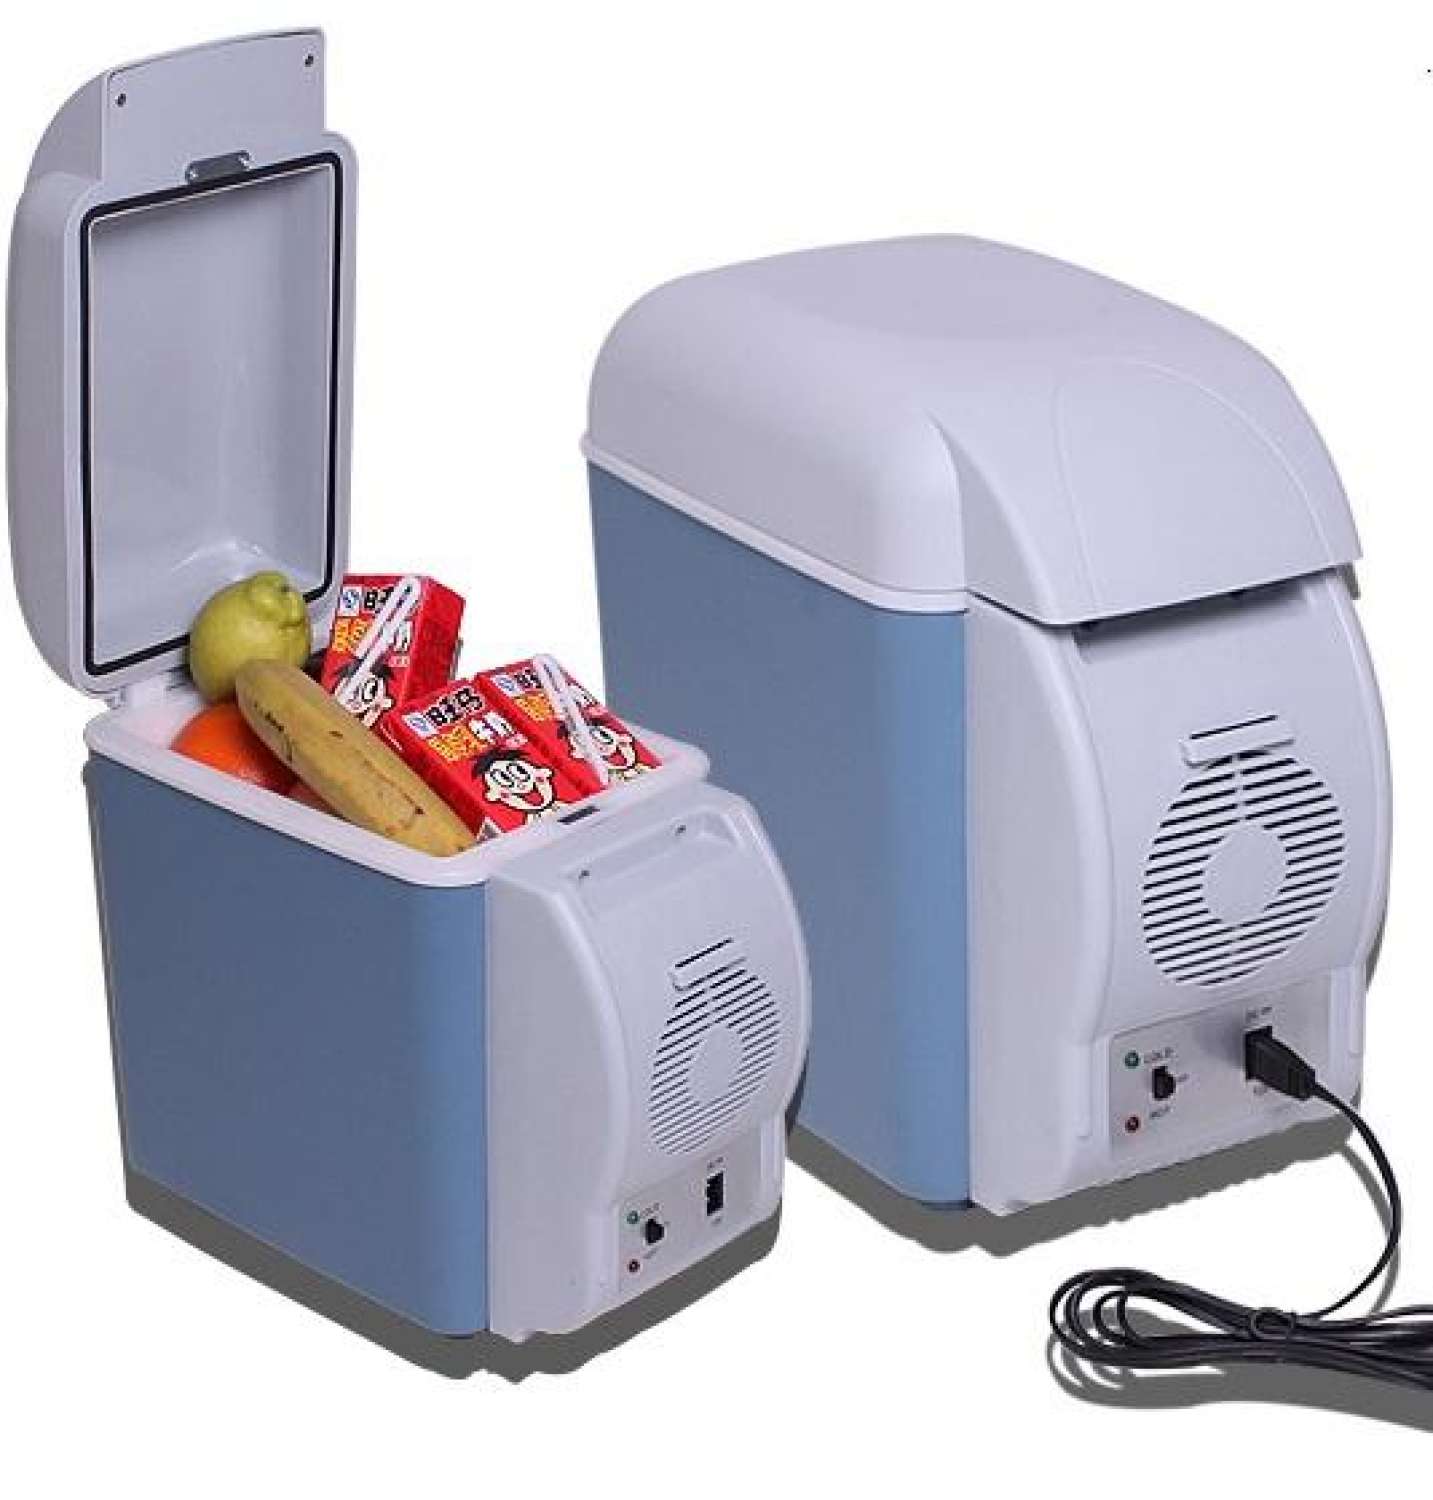 ( Hàng Mới 2022 ) Tủ Lạnh Mini Tủ Lạnh Xe Hơi 7.5 Lít Tiện Dụng Trên Ô Tô Khi Đi Xa và Dùng Cho Văn Phòng Nhỏ. SP Được Bảo Hành